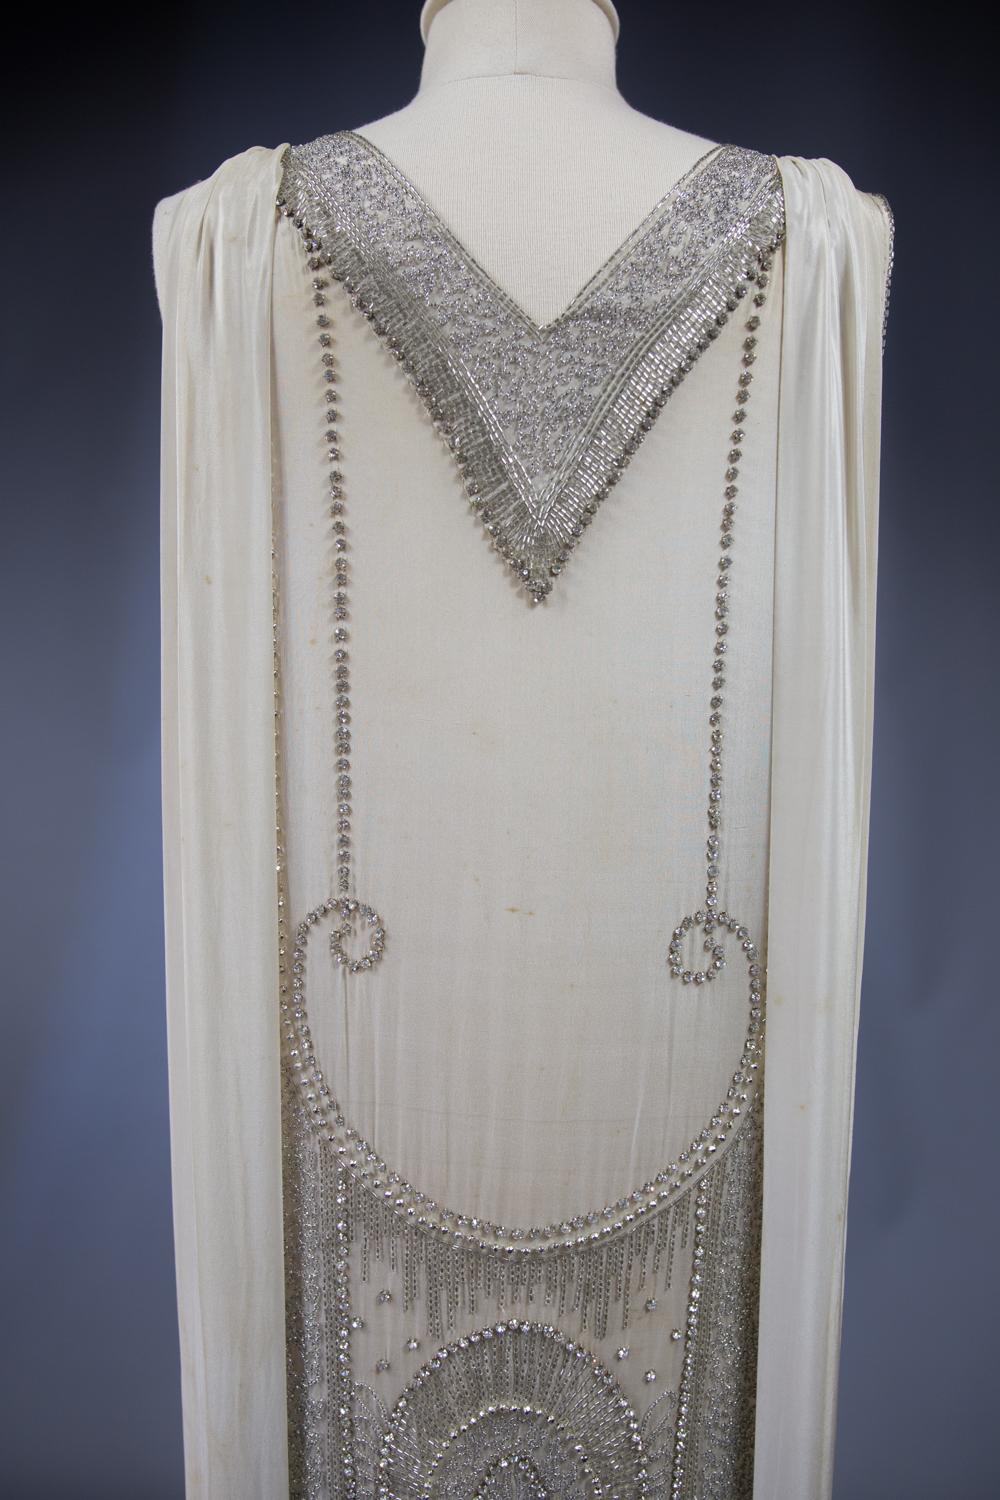 1925 dresses